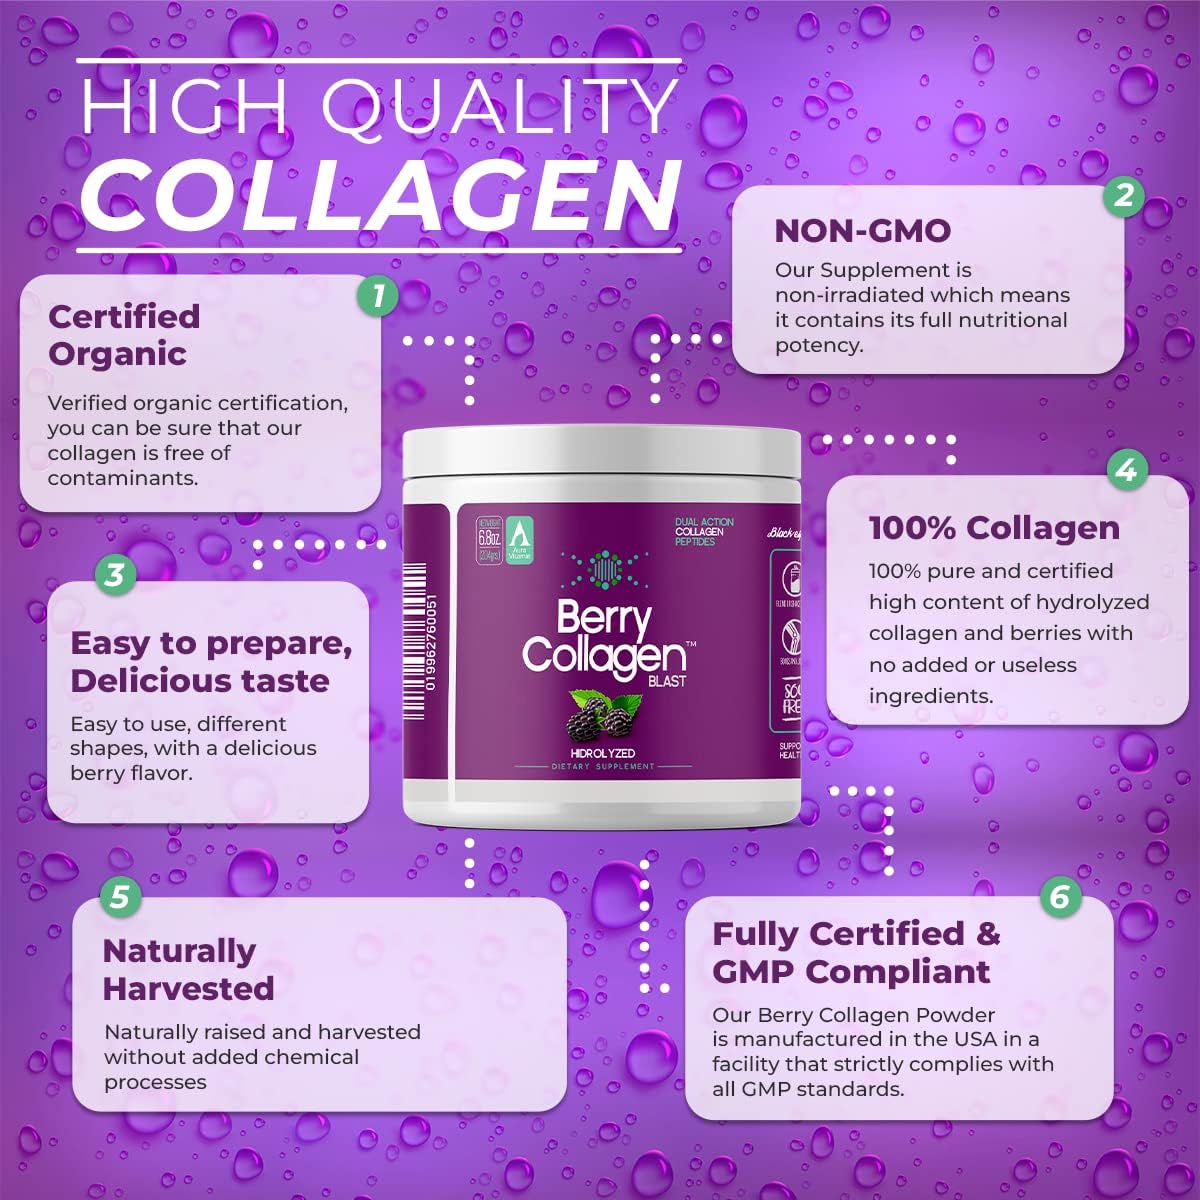 Berry Collagen Blast